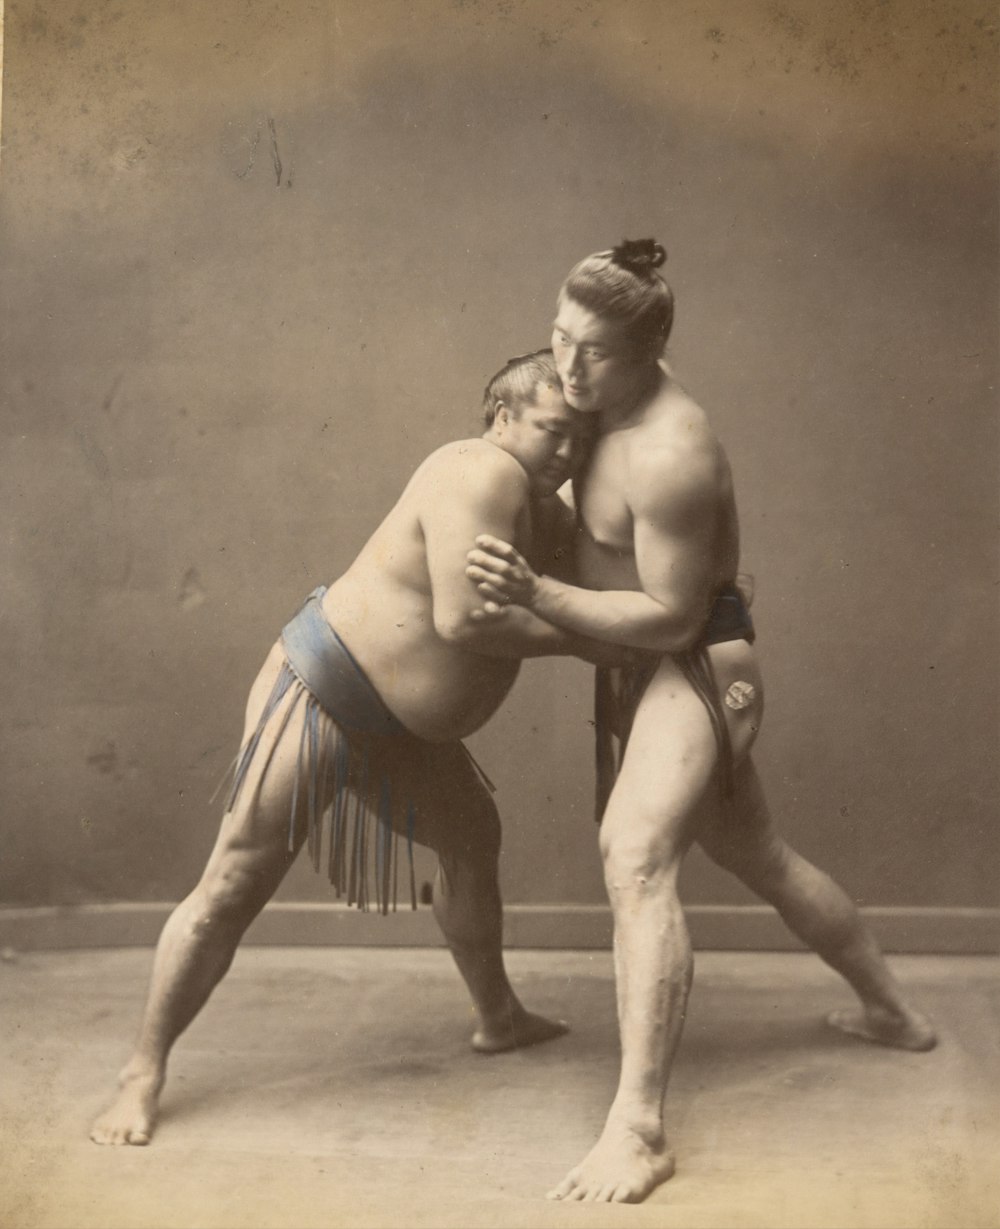 Immagine storica dei lottatori di sumo nel 1870